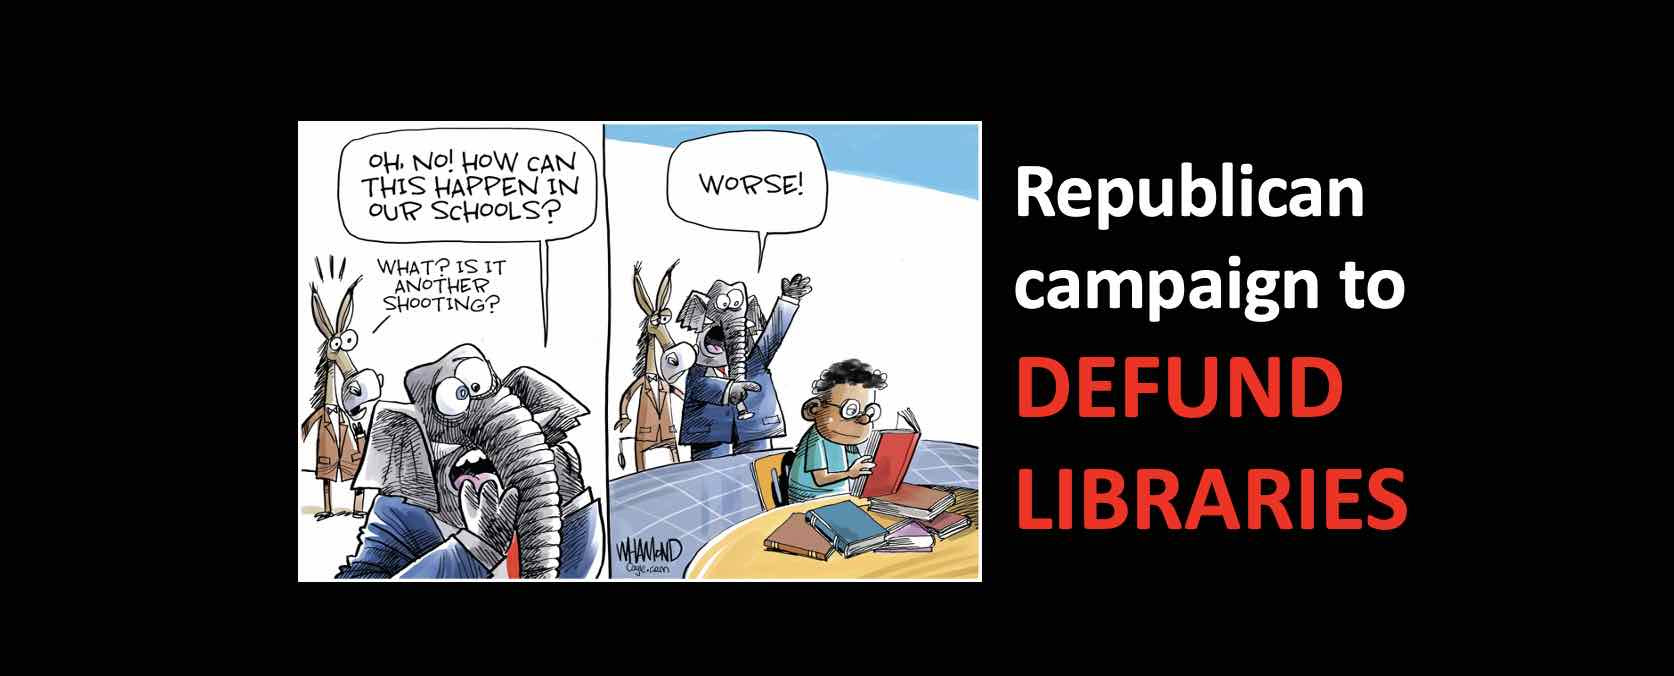 Republicans plan to DEFUND PUBLIC LIBRARIES